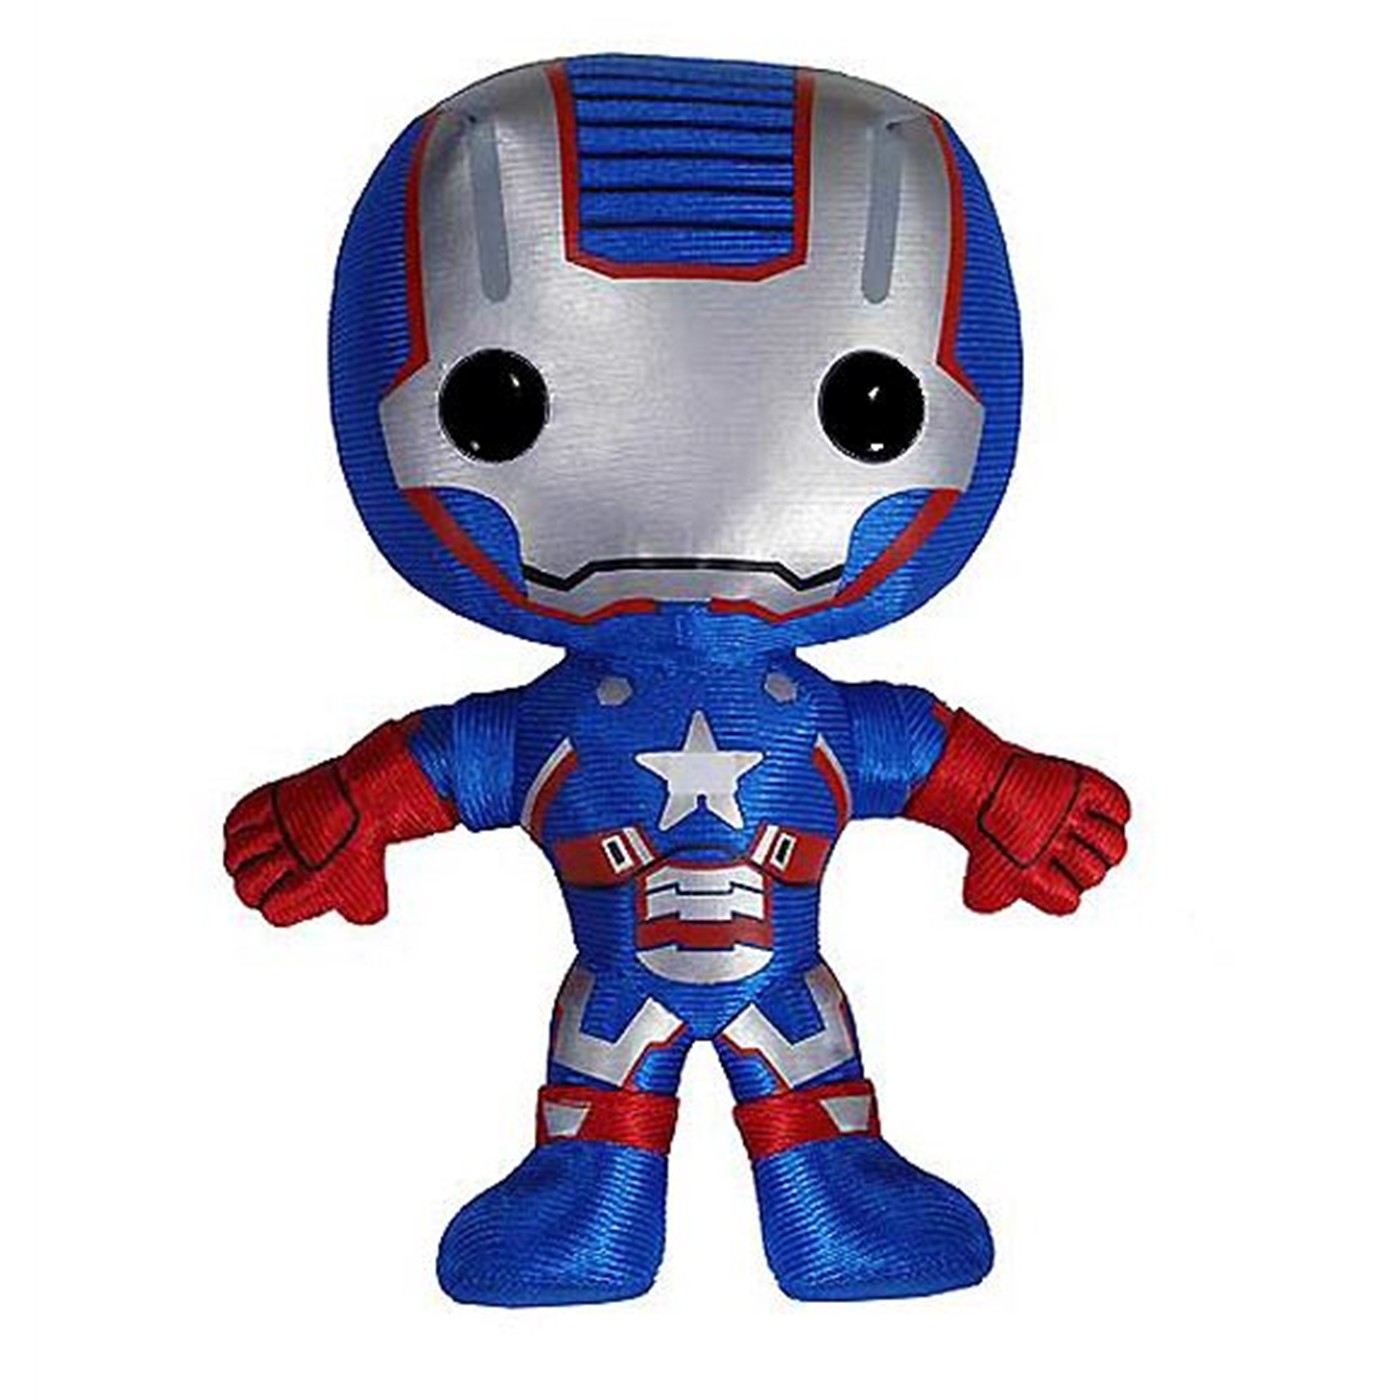 Iron Man 3 Iron Patriot Plush Toy